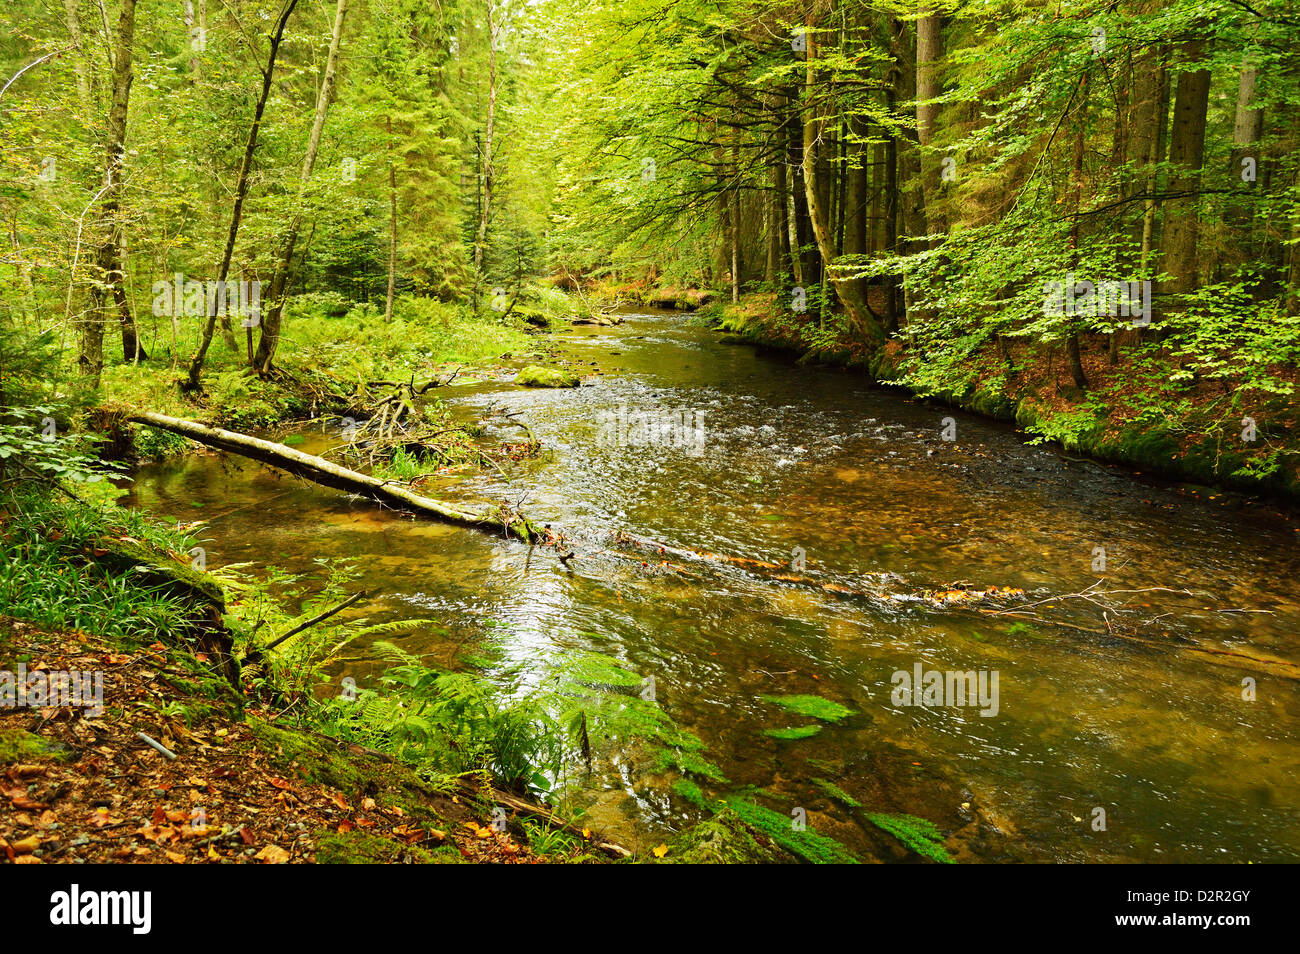 Grosser Regen (river), near Bayerisch Eisenstein, Bavarian Forest, Bavaria, Germany, Europe Stock Photo